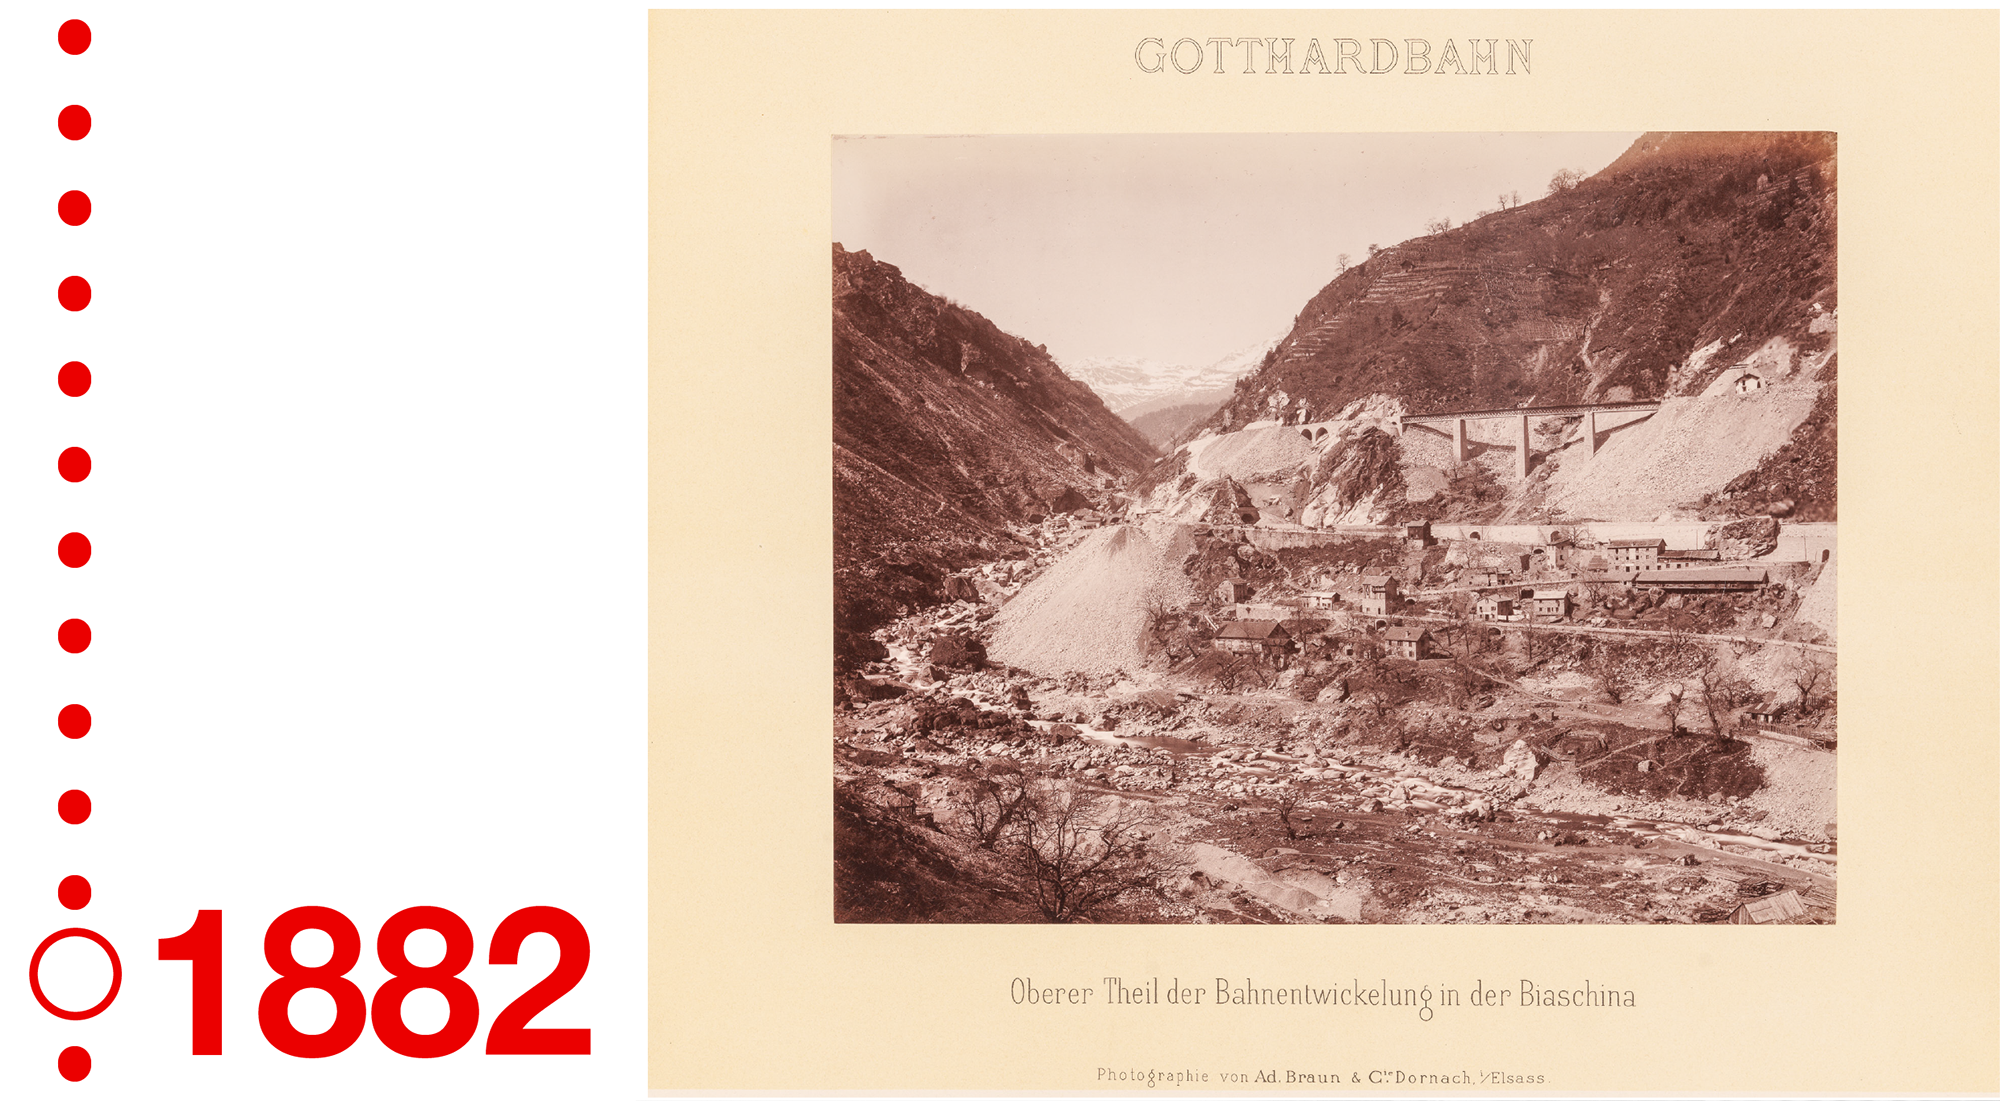 Baustelle der Gotthardbahn im Jahr 1882